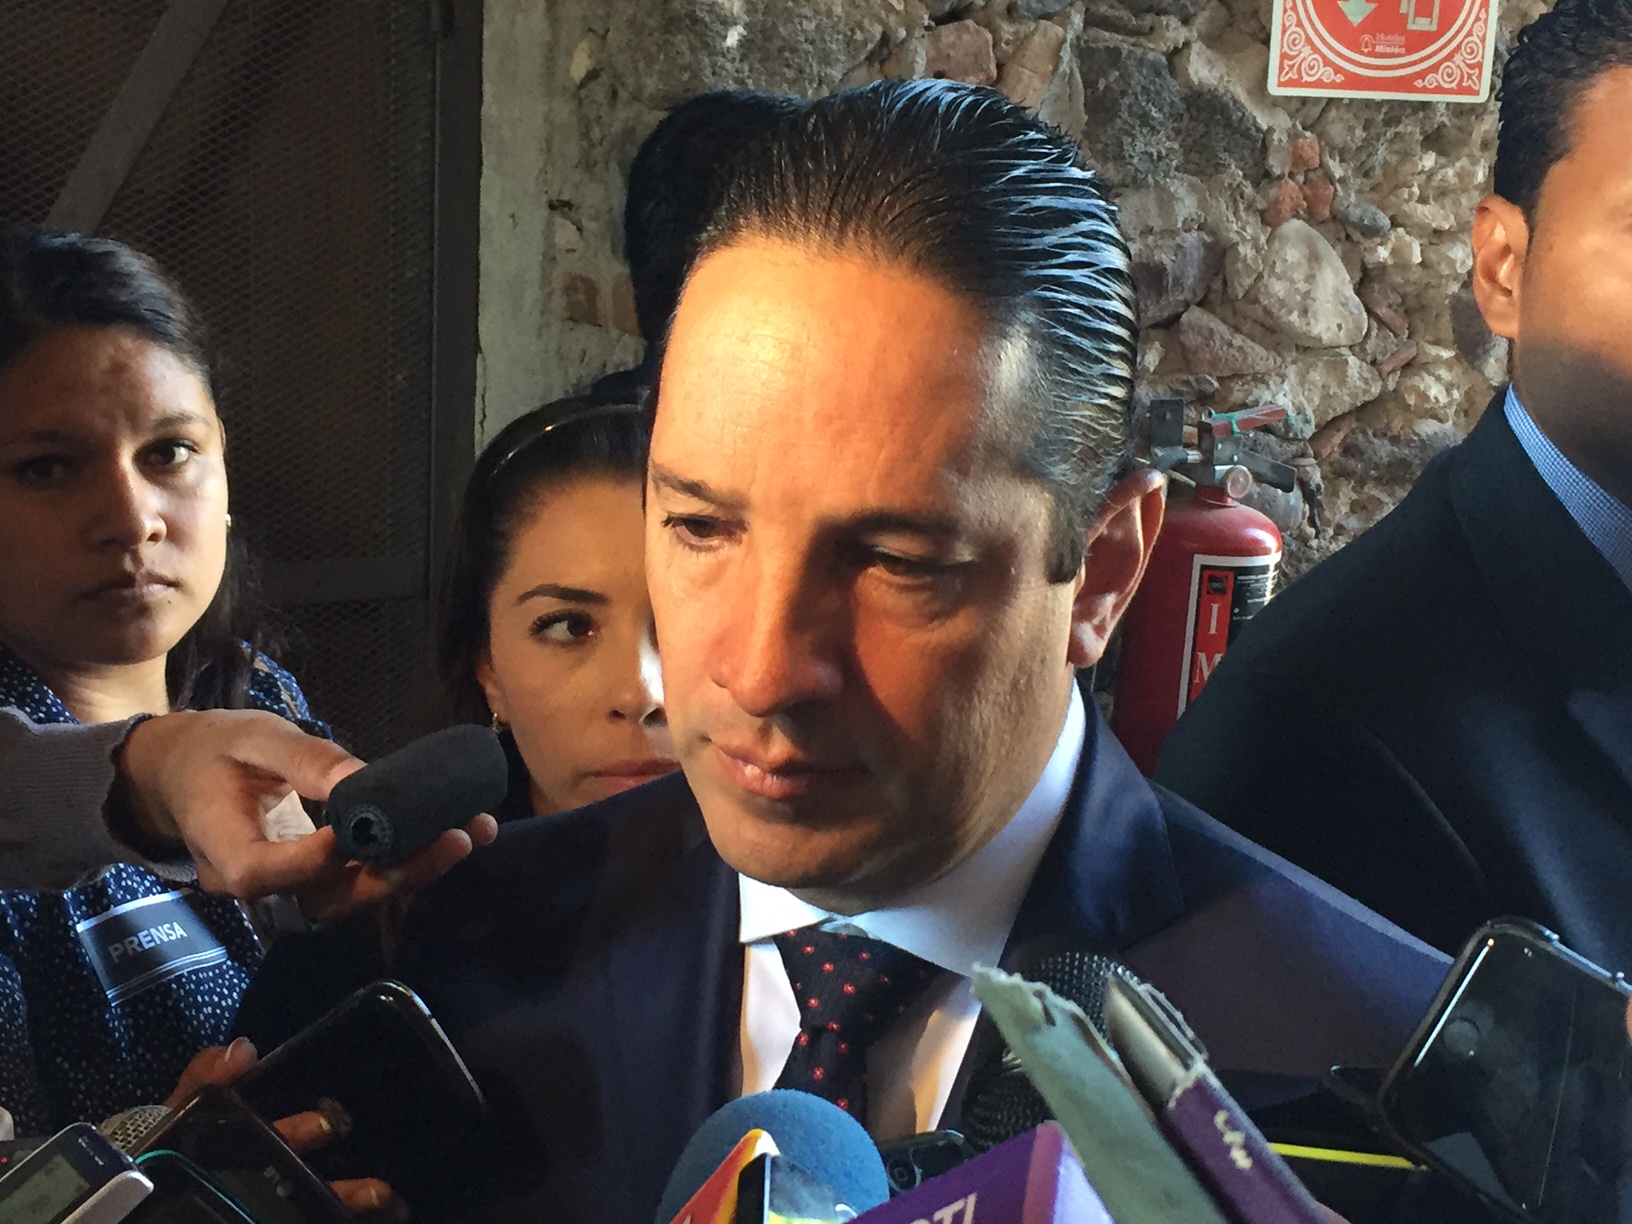  “Incrementar penas por abusos deshonestos no ayuda, si a nivel federal hay otra normativa”: Pancho Domínguez